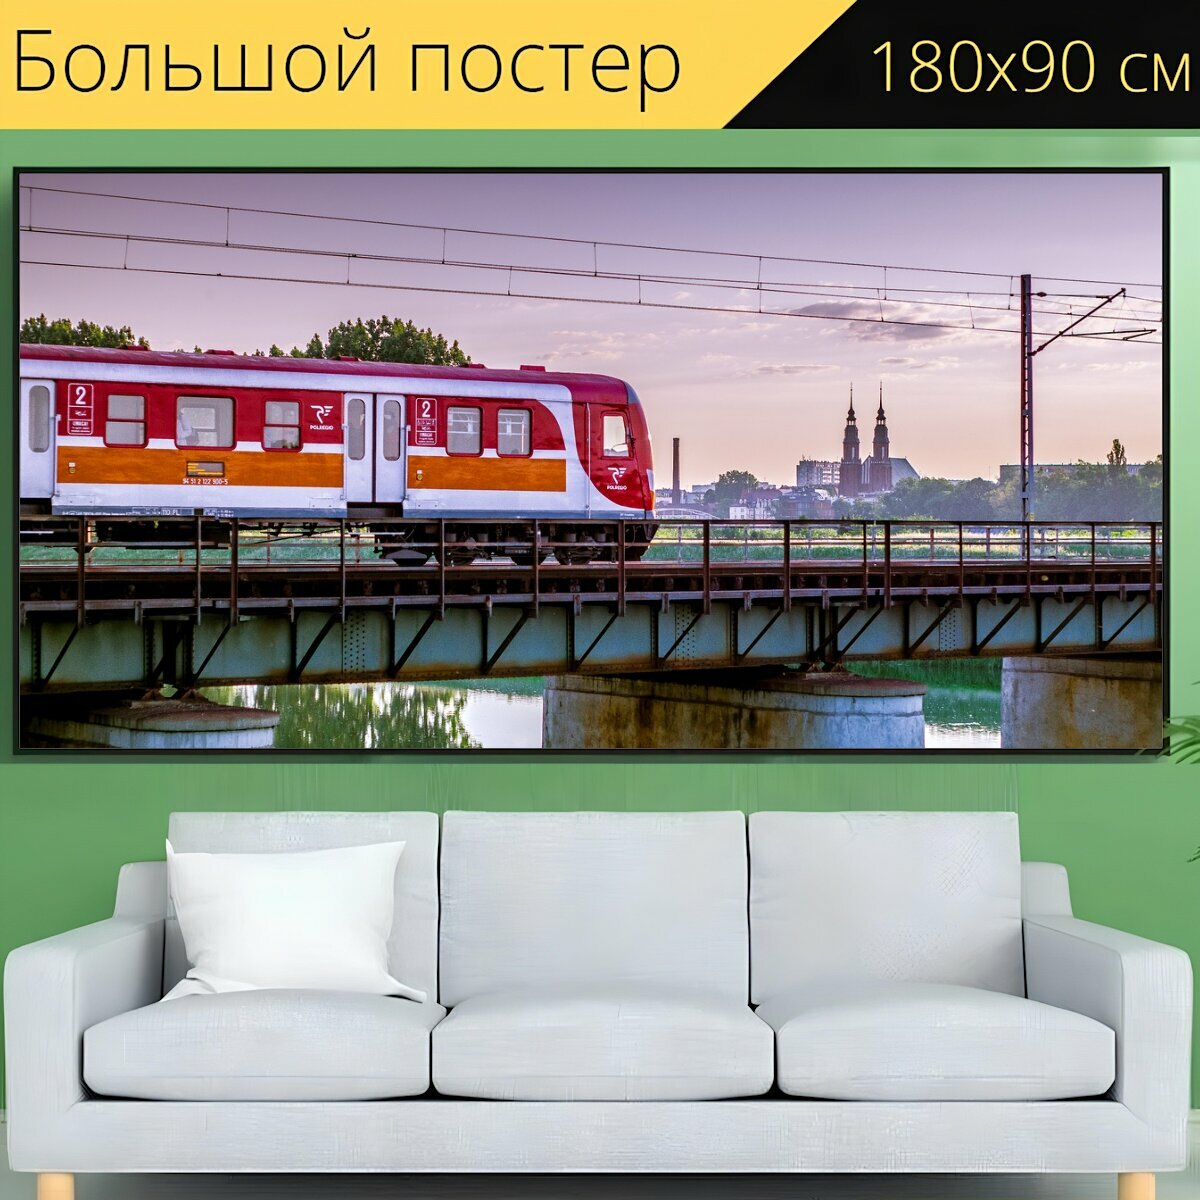 Большой постер "Поезд, виадук, железнодорожный мост" 180 x 90 см. для интерьера